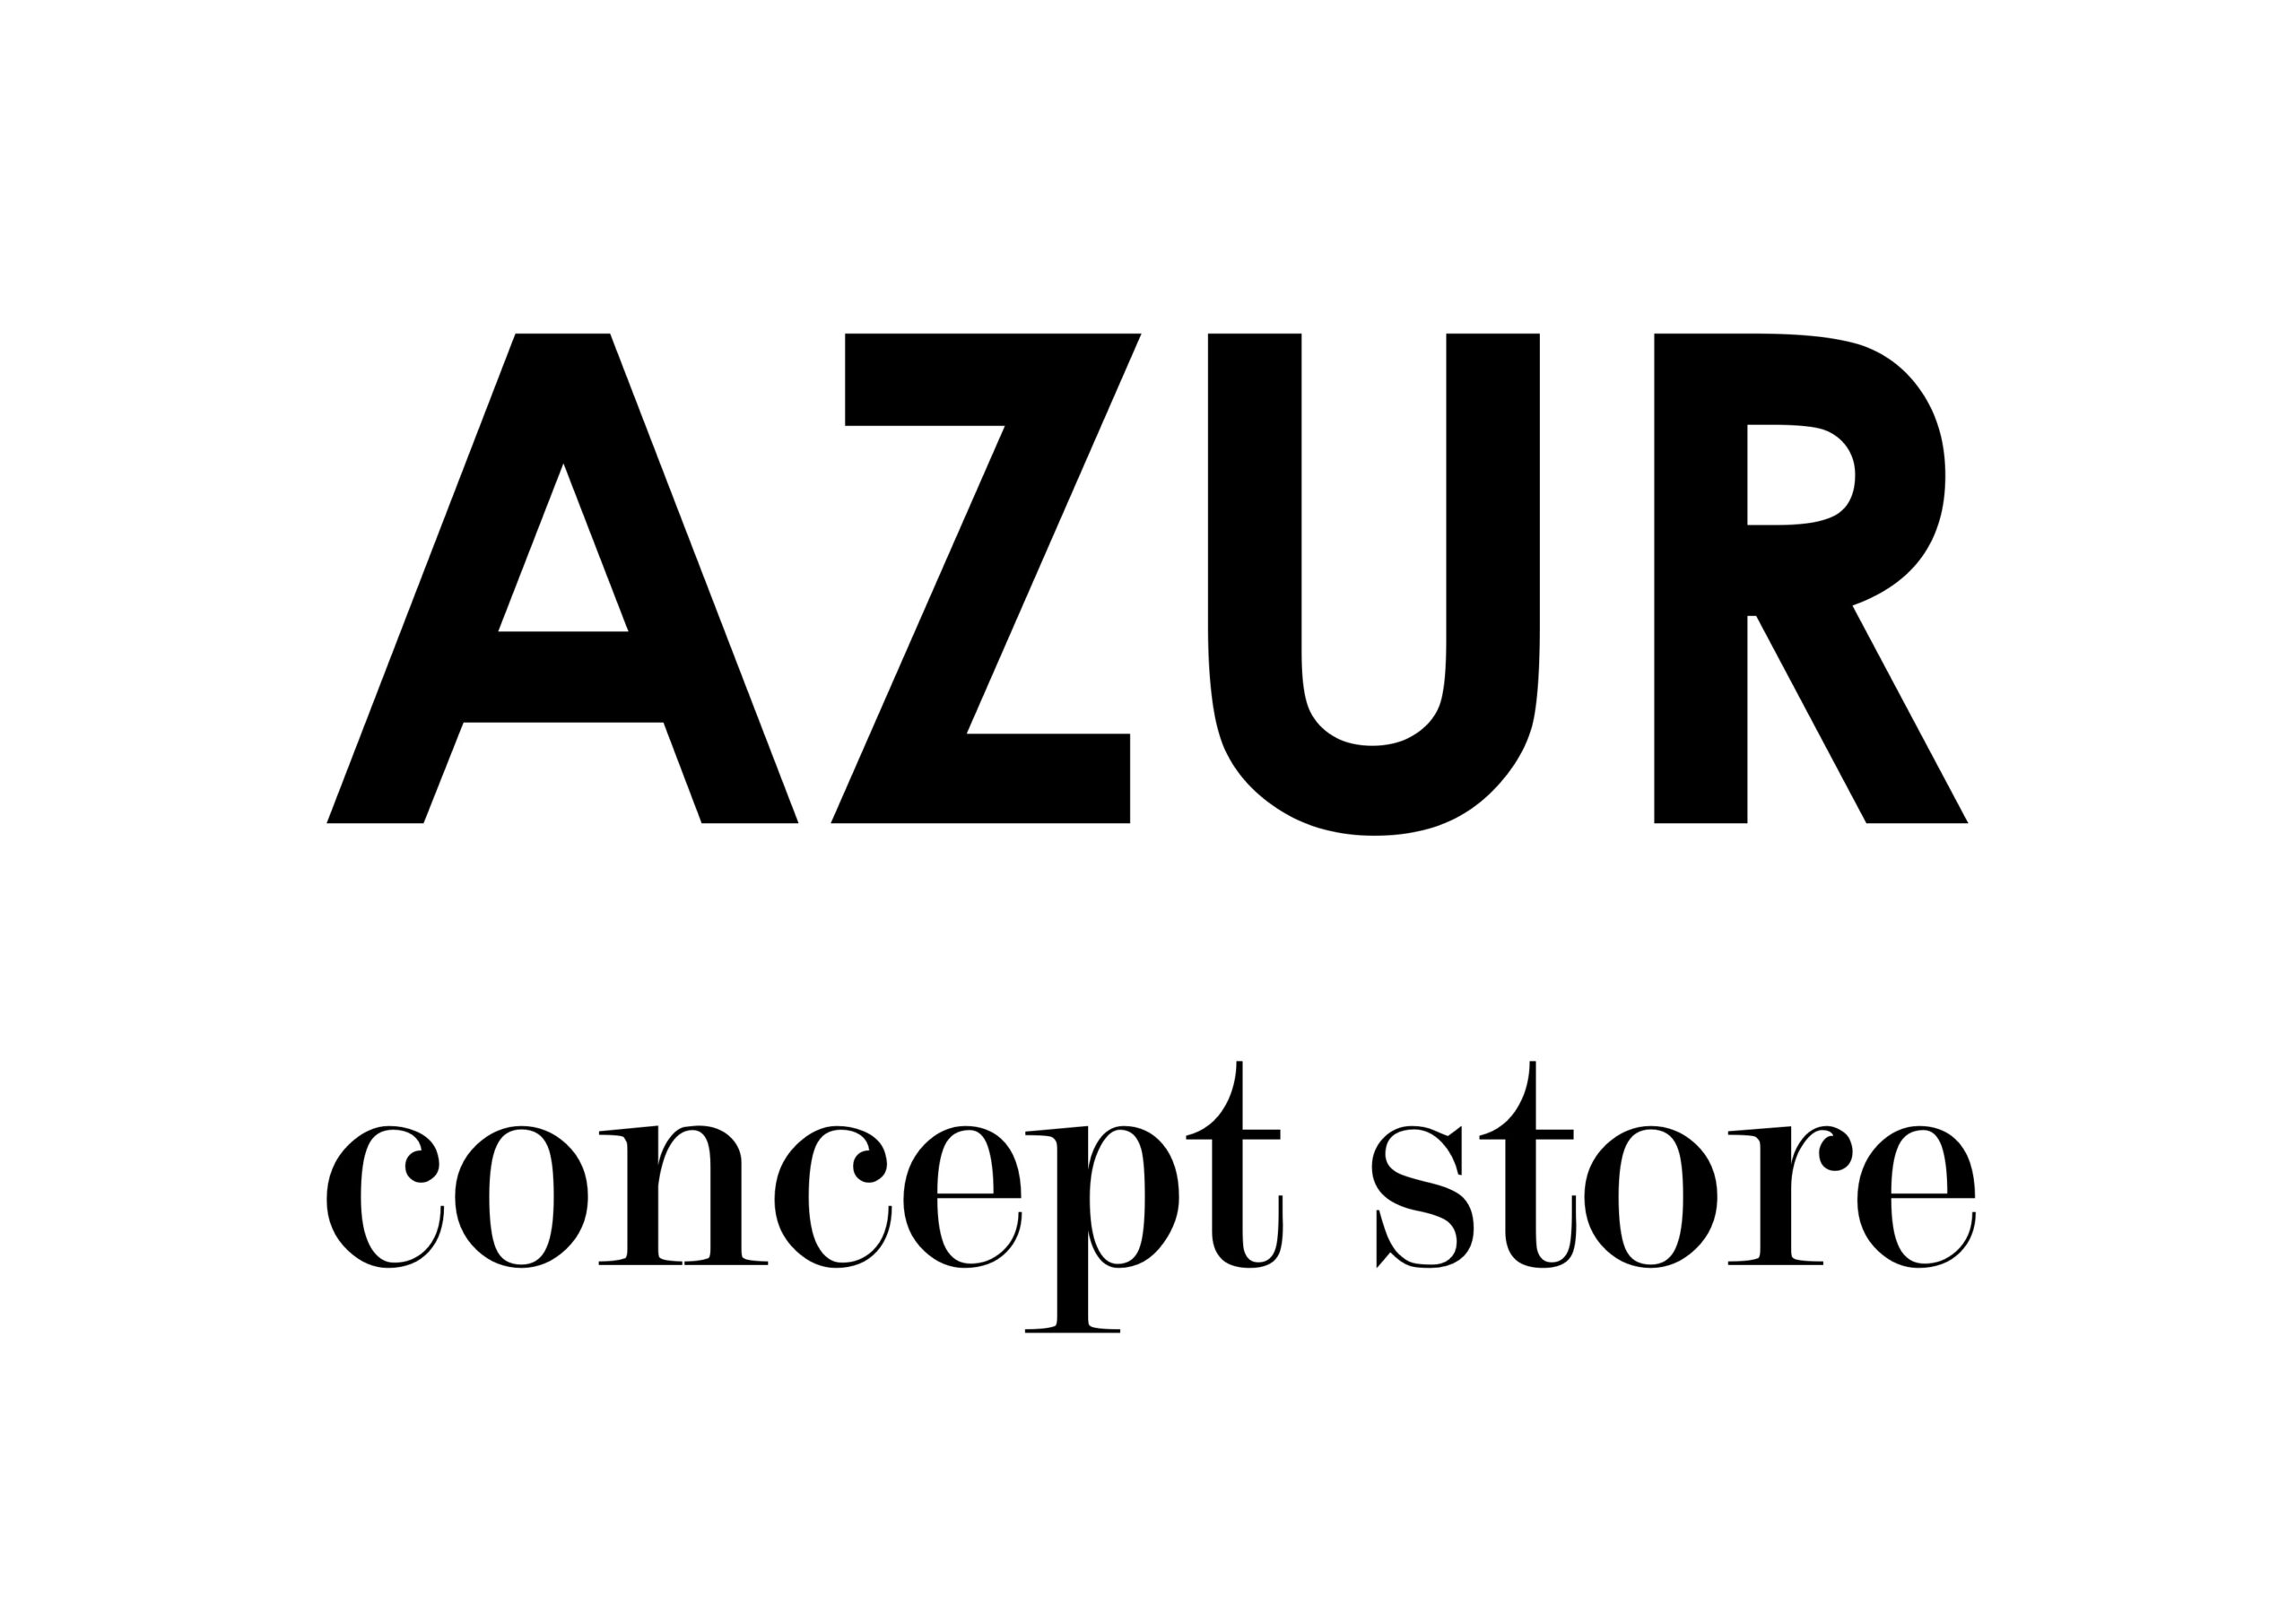 AZUR concept store